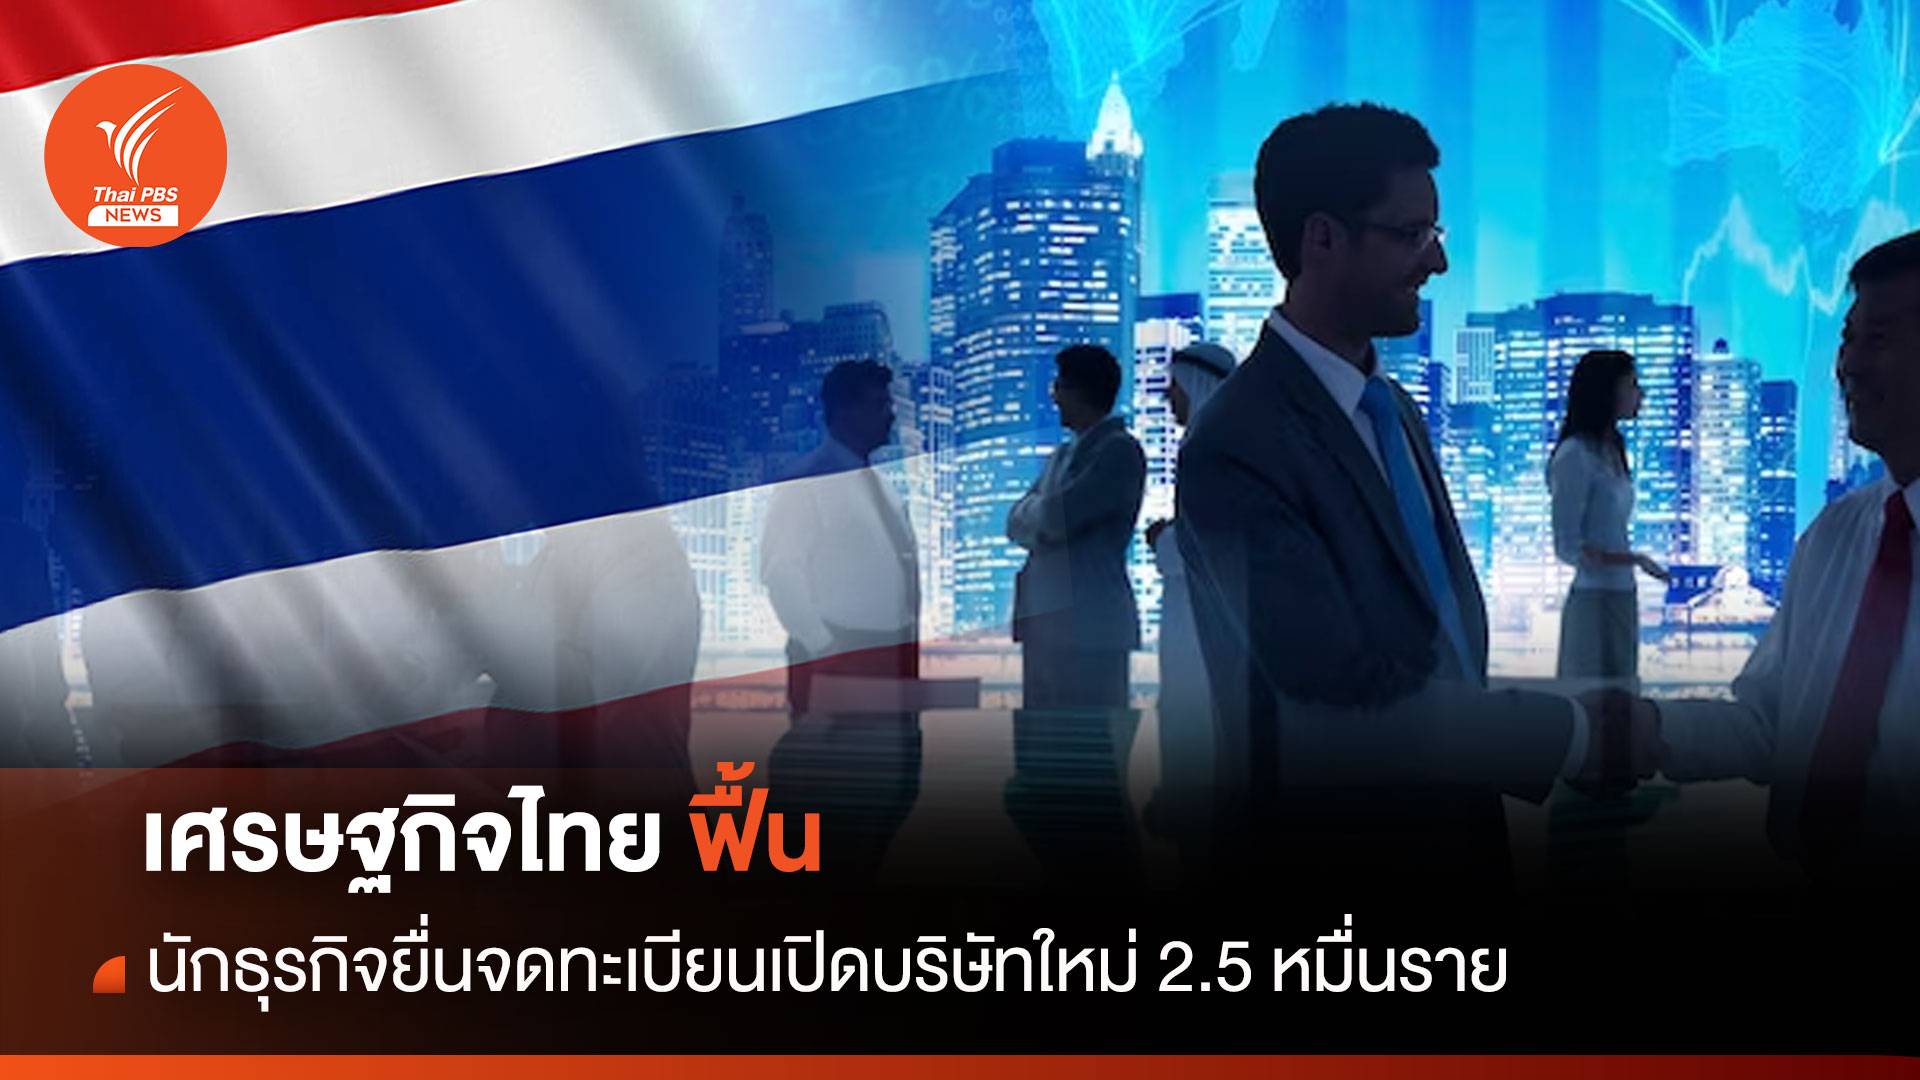 เศรษฐกิจไทยฟื้น นักธุรกิจยื่นจดทะเบียนเปิดบริษัทใหม่ 2.5 หมื่นราย